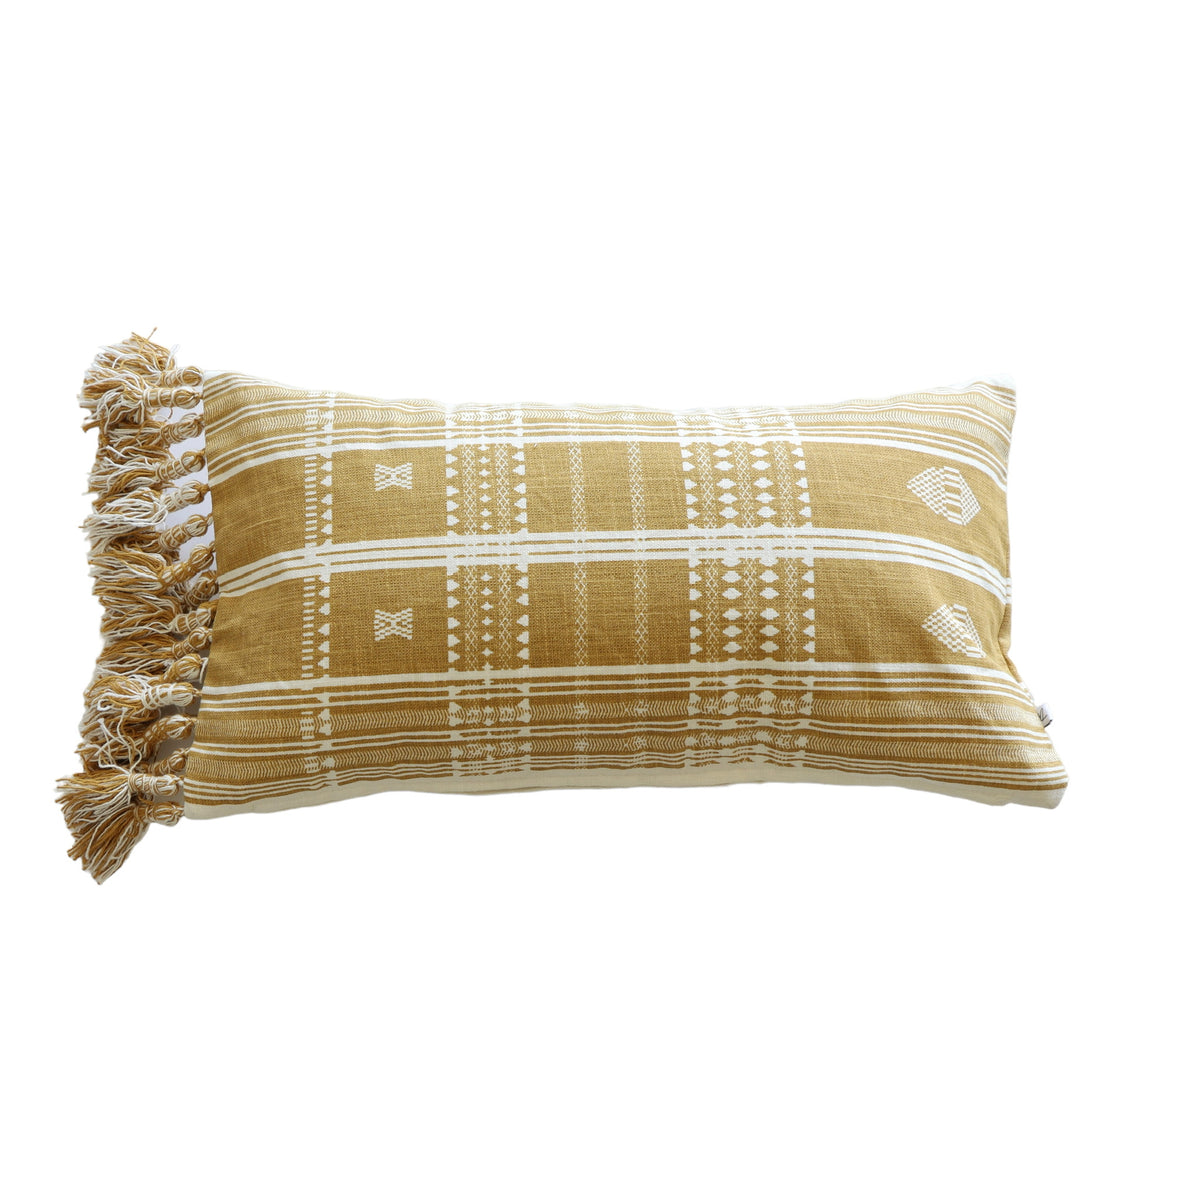 Jason Mustard Batik Print Lumbar Pillow Cover 12x22 - Holistic Habitat 